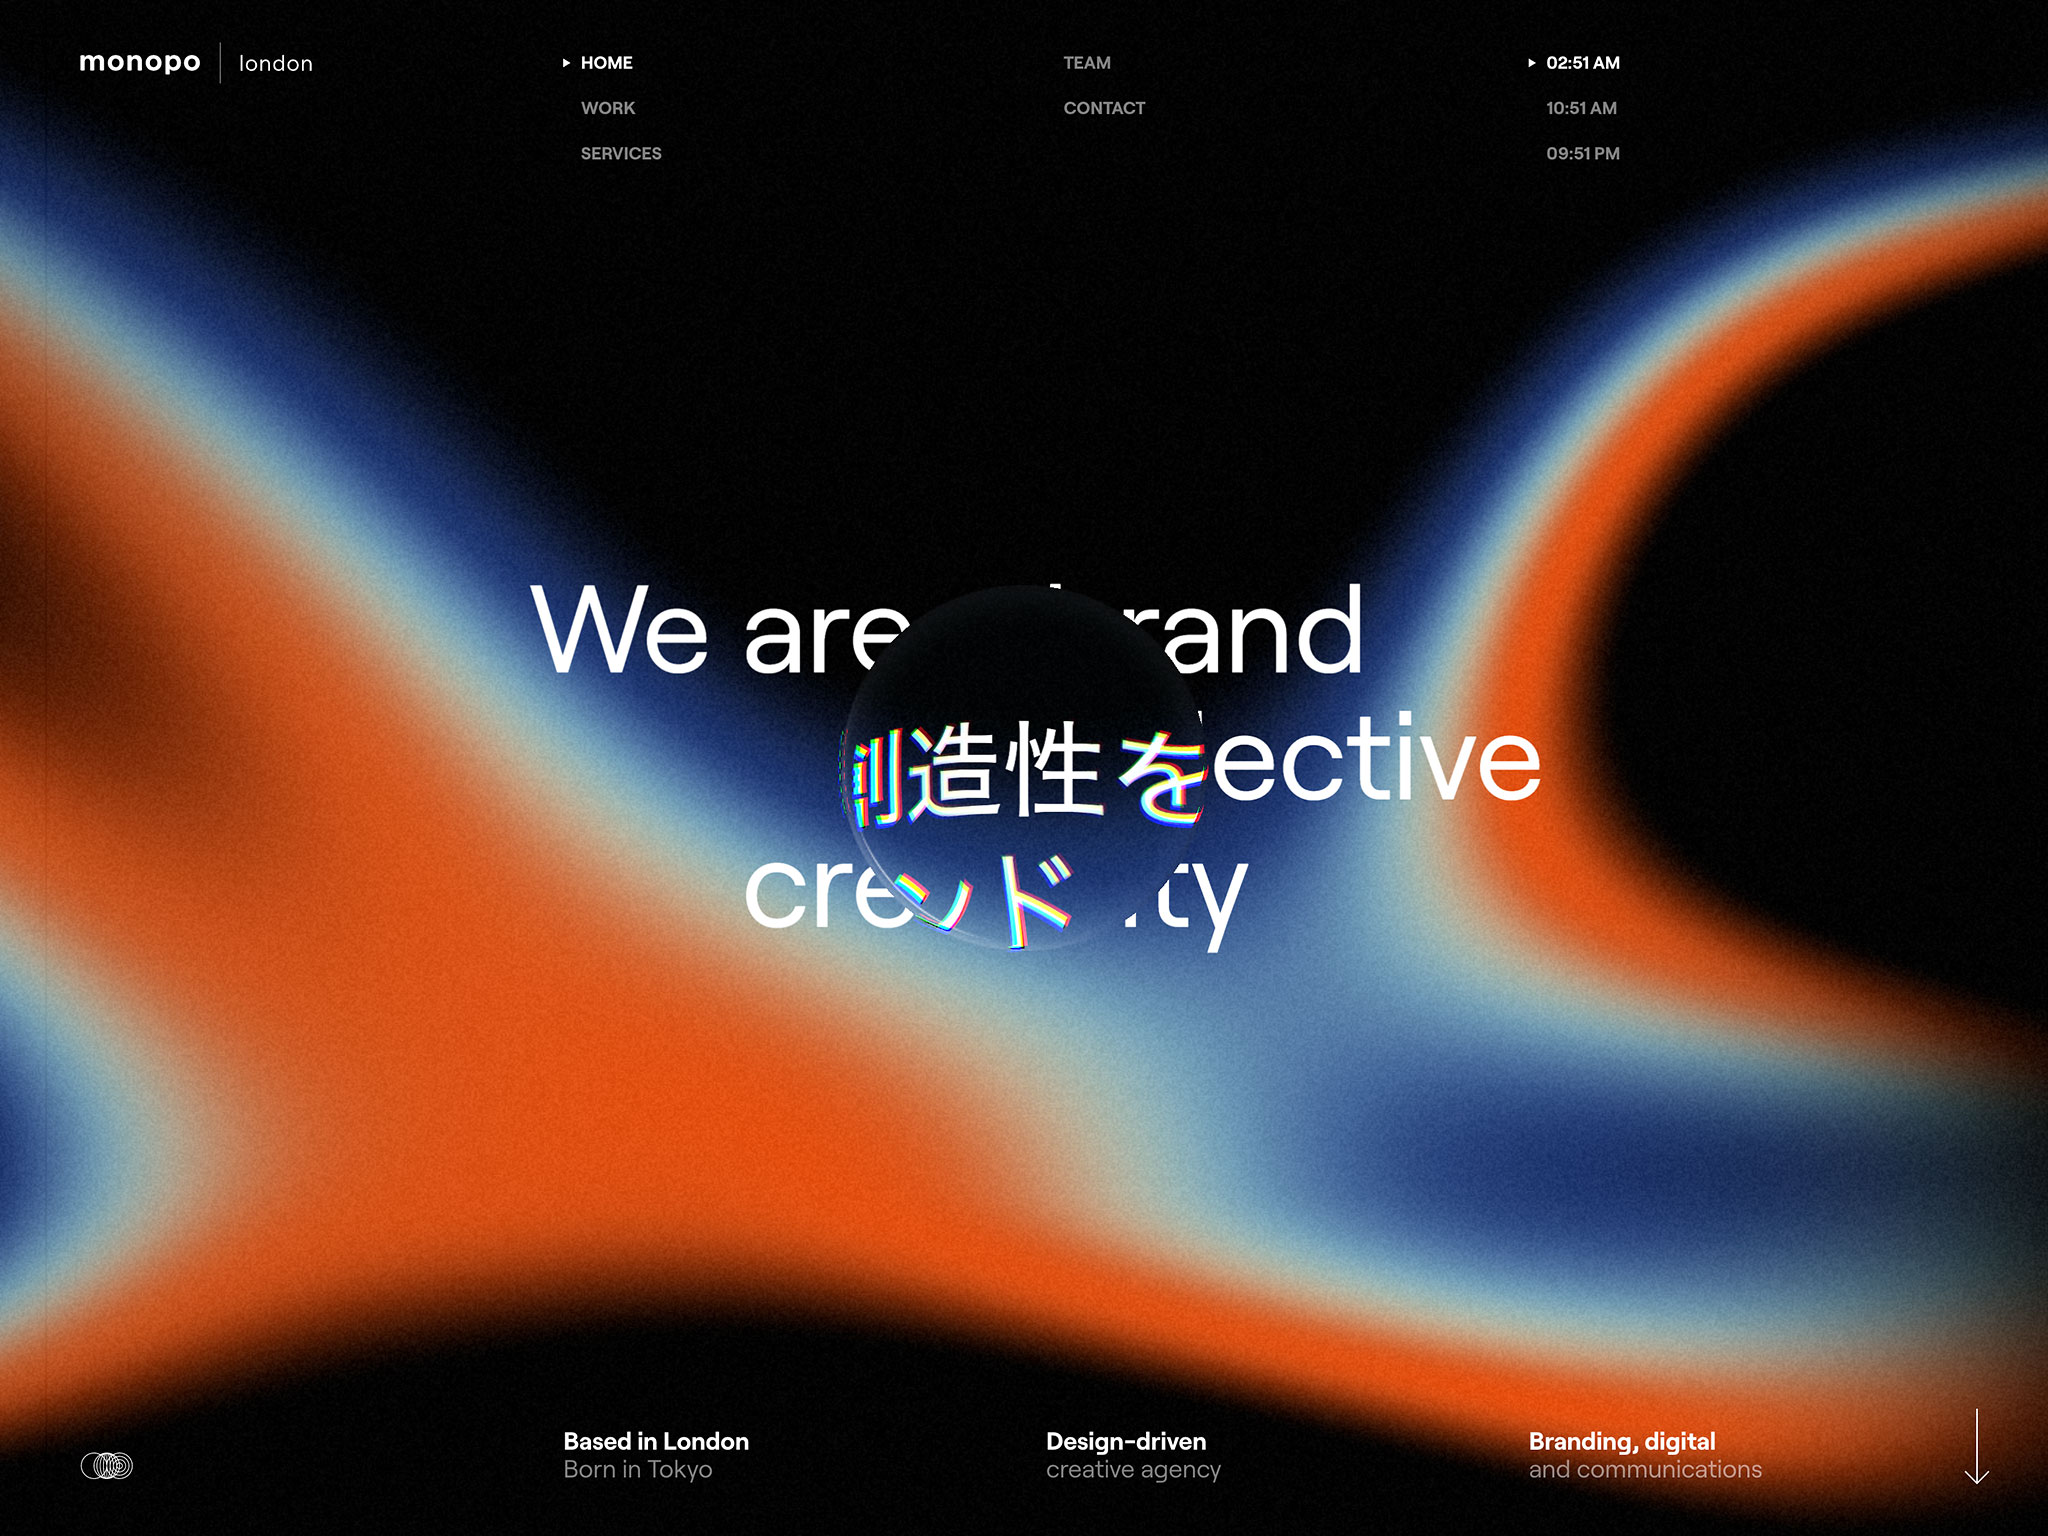 monopo london | Design-driven creative agency. Based in London, born in  Tokyo.